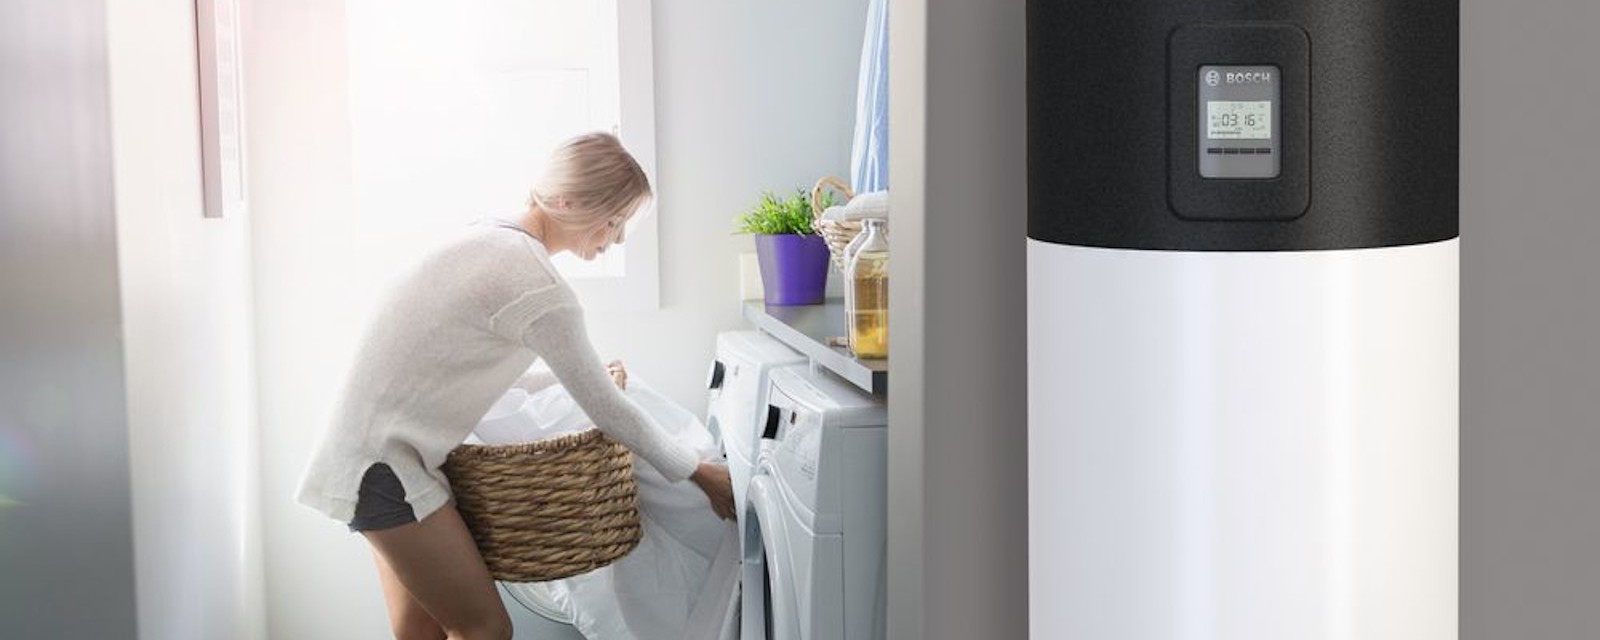 Eine Frau räumt Wäsche in die Waschmaschine, im Vordergrund ist eine Wärmepumpe zu sehen.